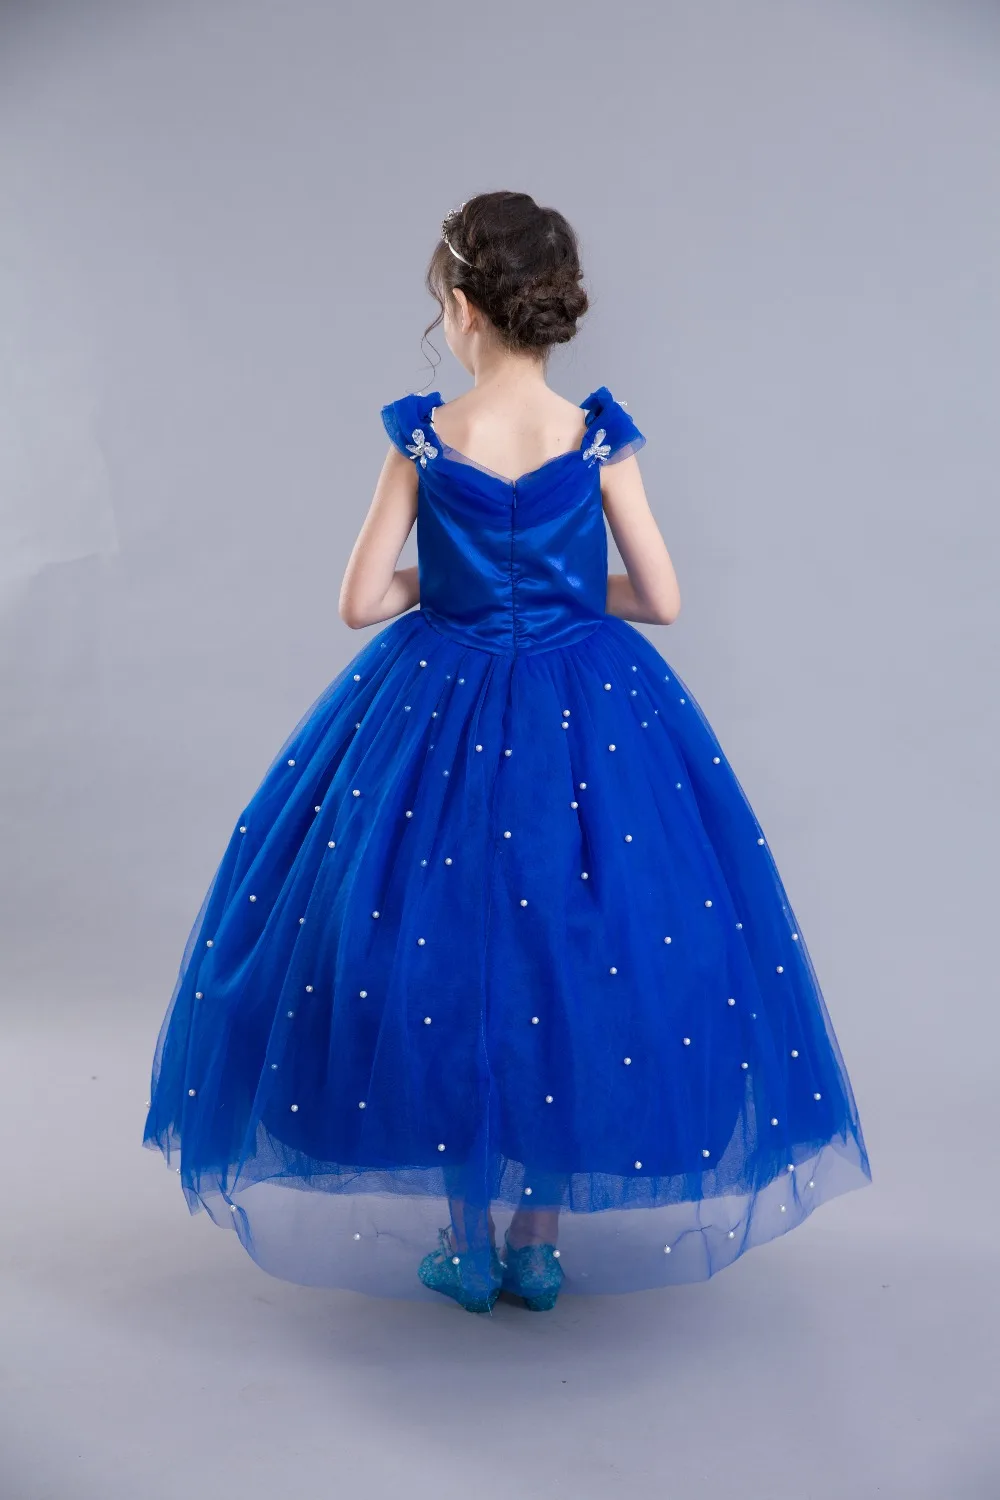 Летнее платье принцессы платье Золушки праздничное платье для девочек, длинное платье в пол, вечерние платья детская одежда карнавальный синее длинное платье жемчужного цвета